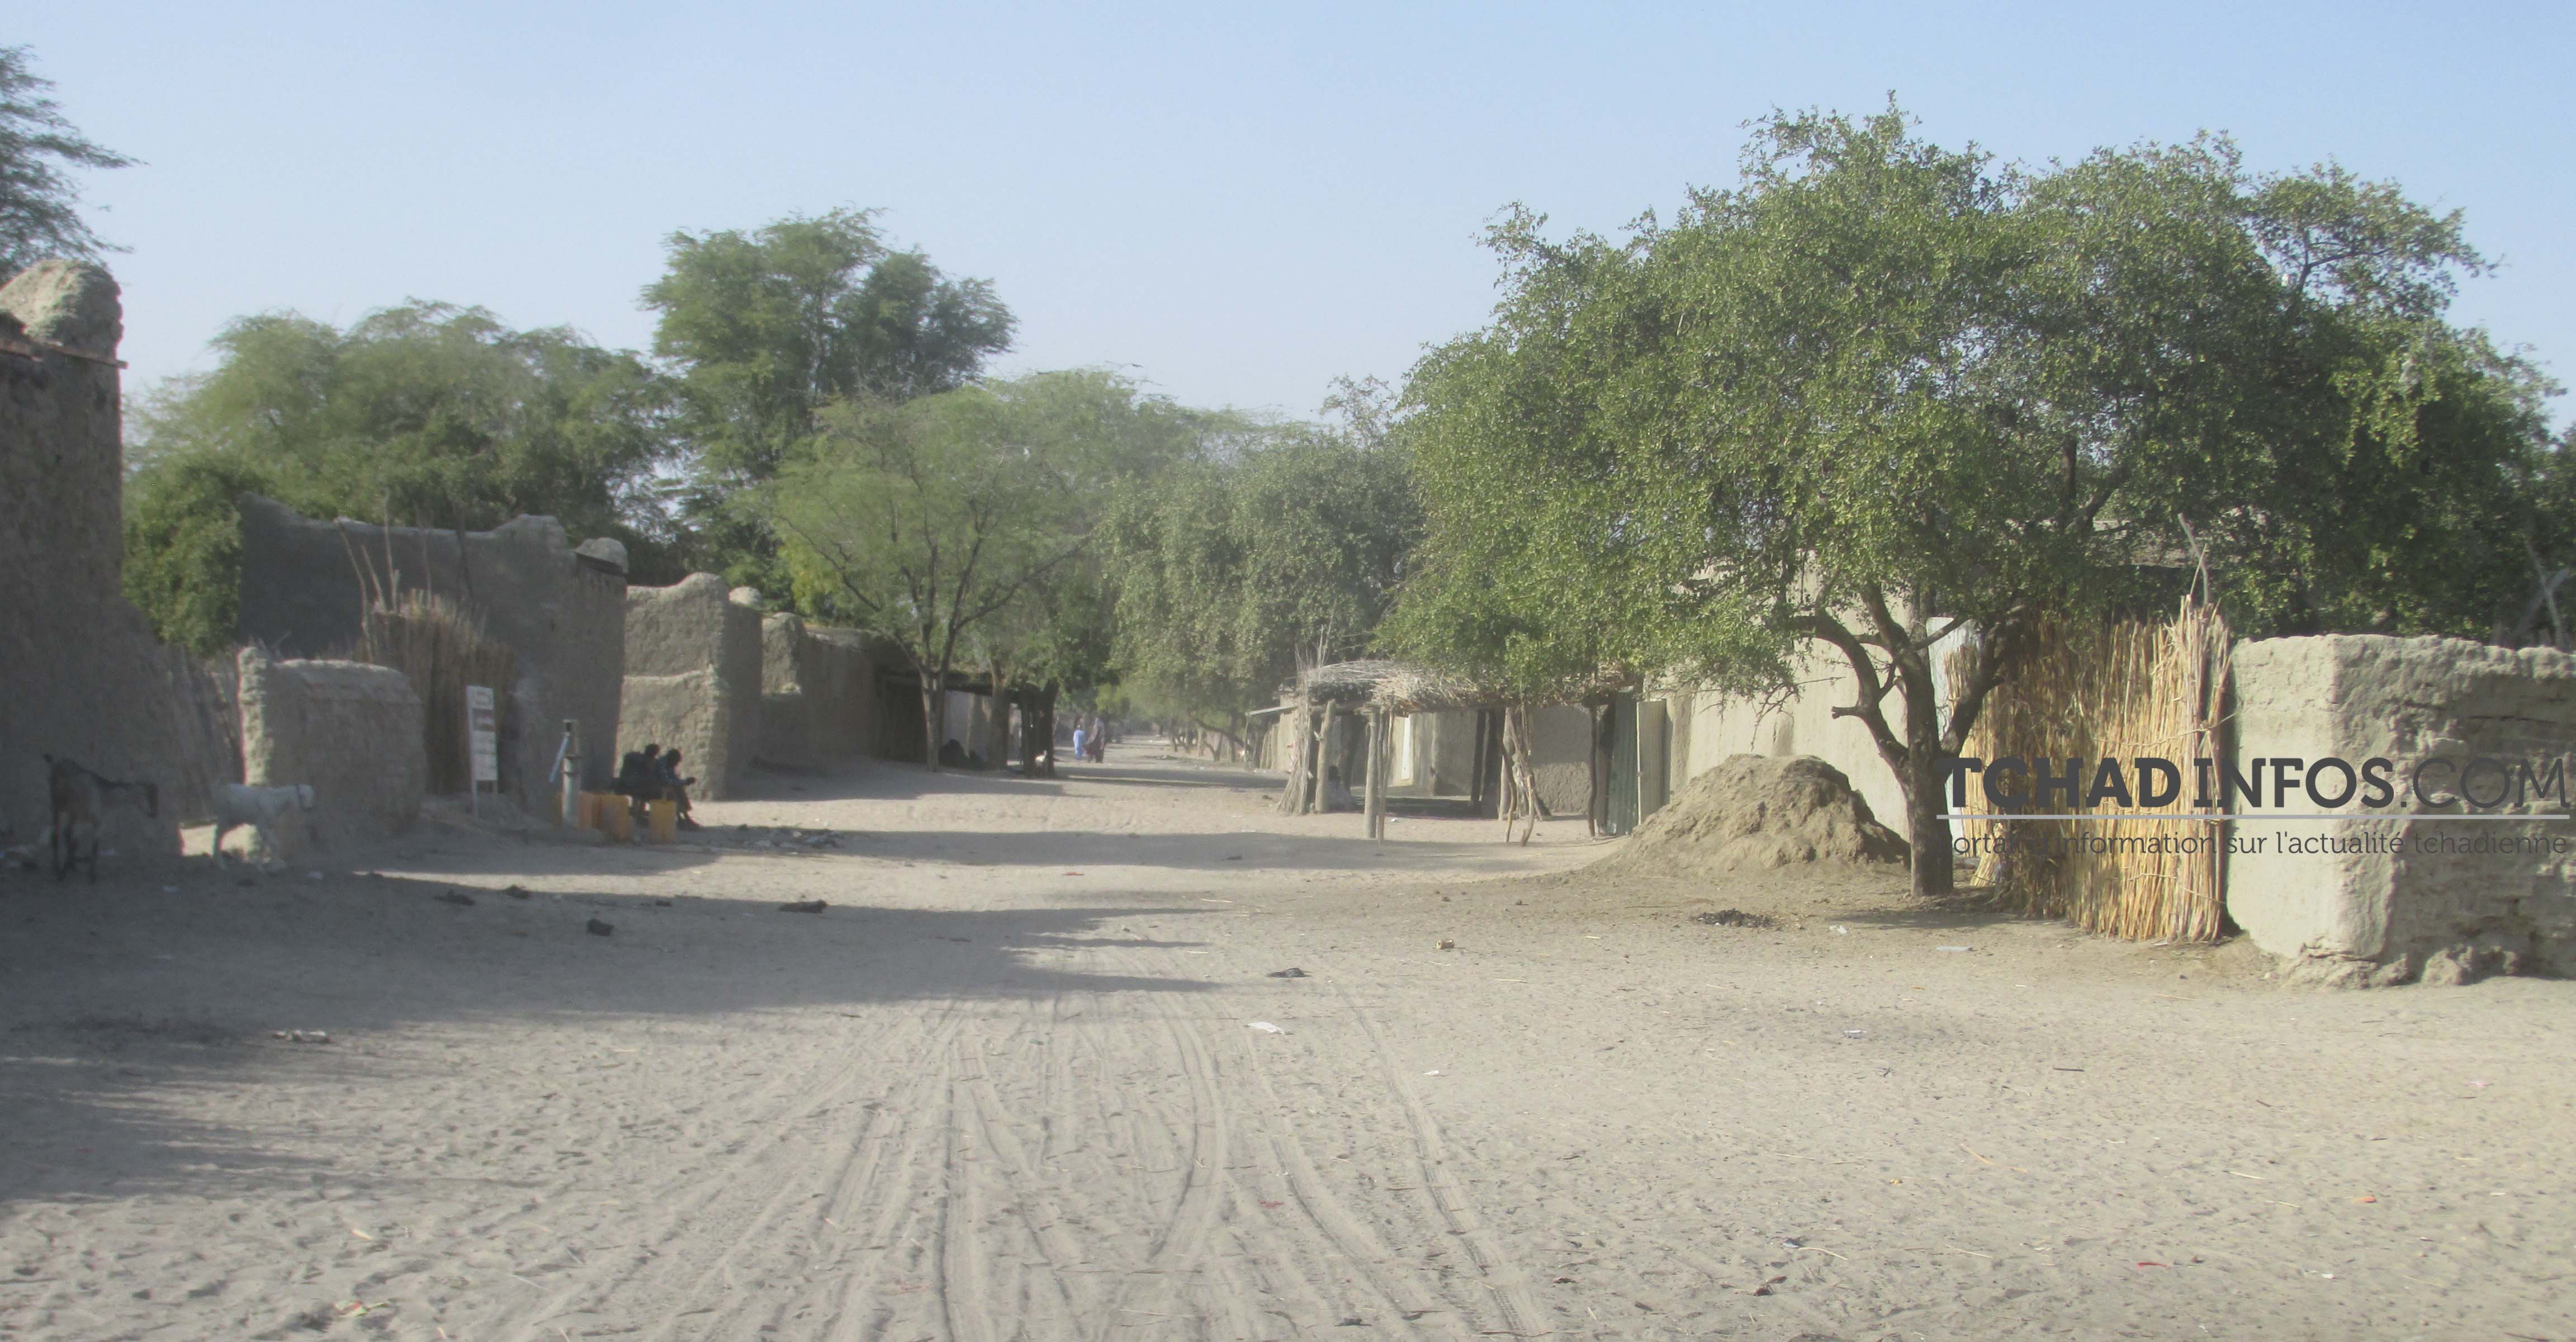 Tchad : un sud-africain abattu par son garde-corps au Lac